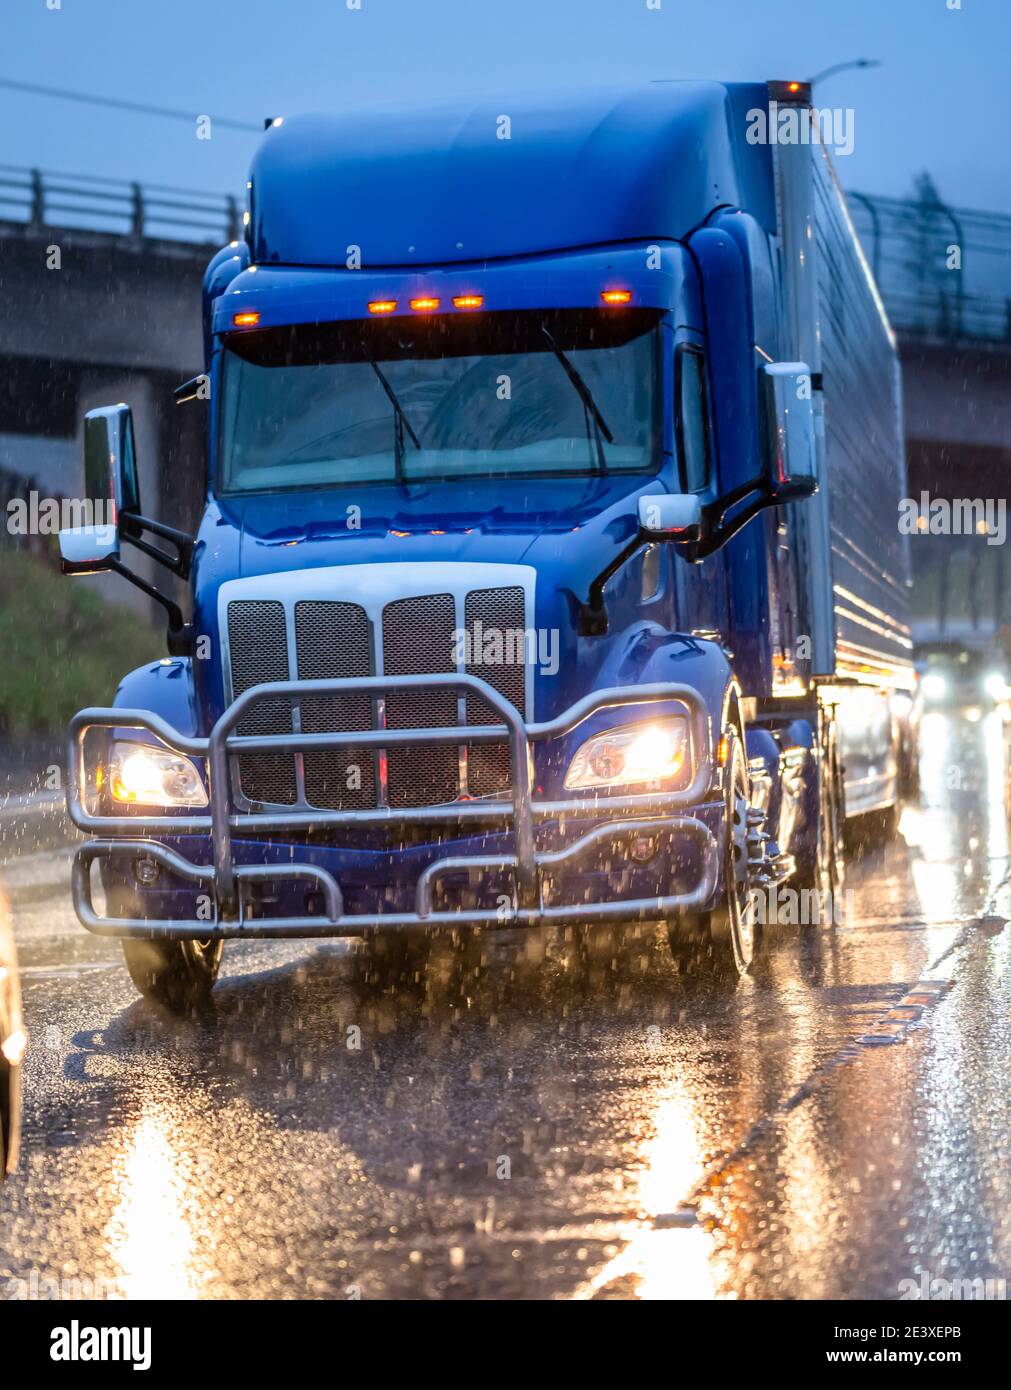 Big Rig stilvolle Industrie blau Semi-Truck mit eingeschaltet Scheinwerfer, die Ladung in Kühlraum-Sattelauflieger transportieren, die auf dem laufen Dämmerung nasse Straße Stockfoto